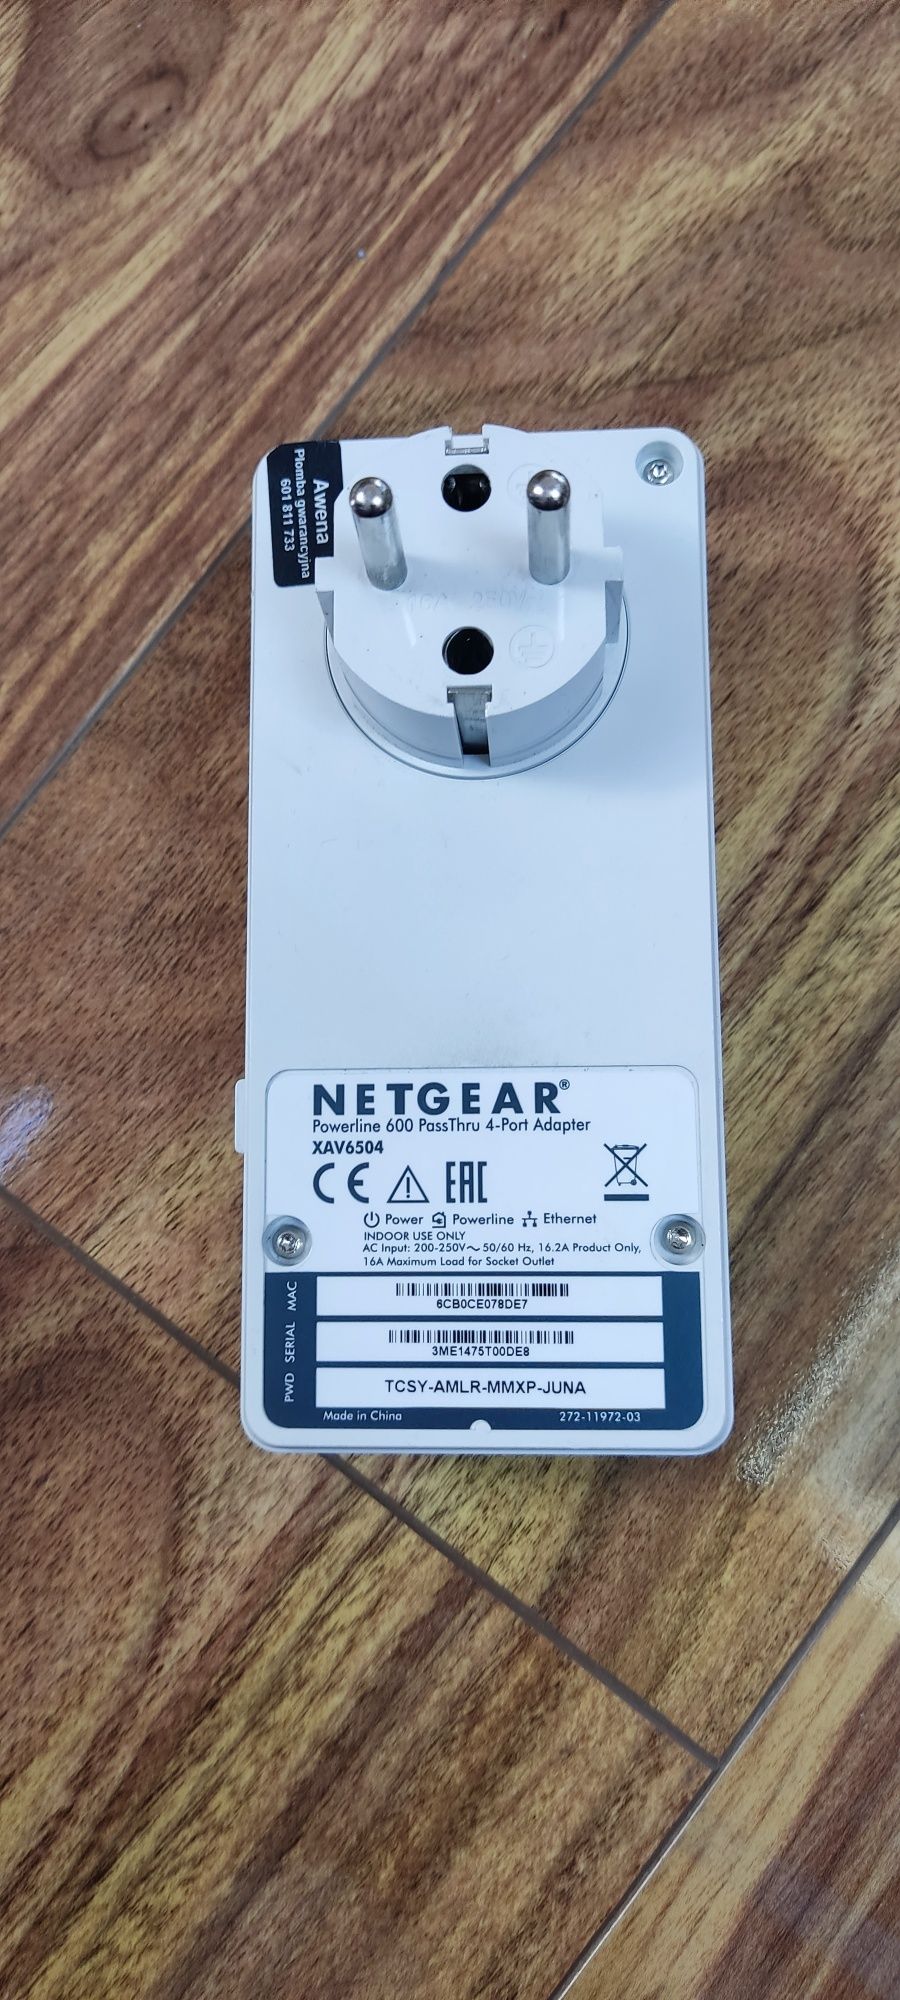 Netgear powerline 600 xav6504 repeater tplink, mikrotik dlink